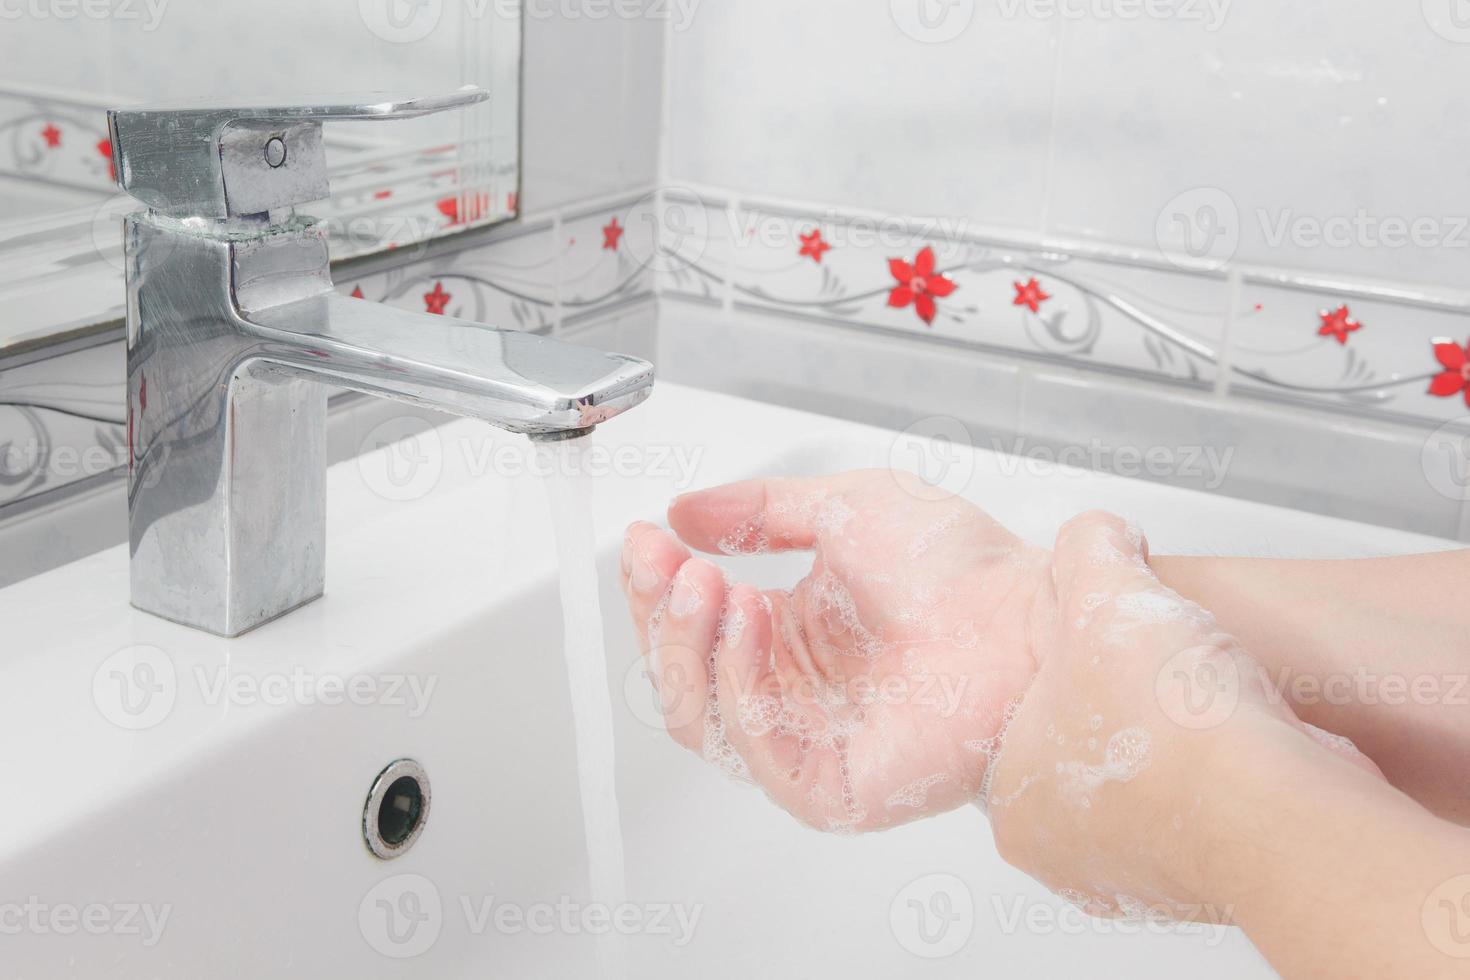 ambas as mãos estão lavando as mãos no conceito sink.hygiene. foto